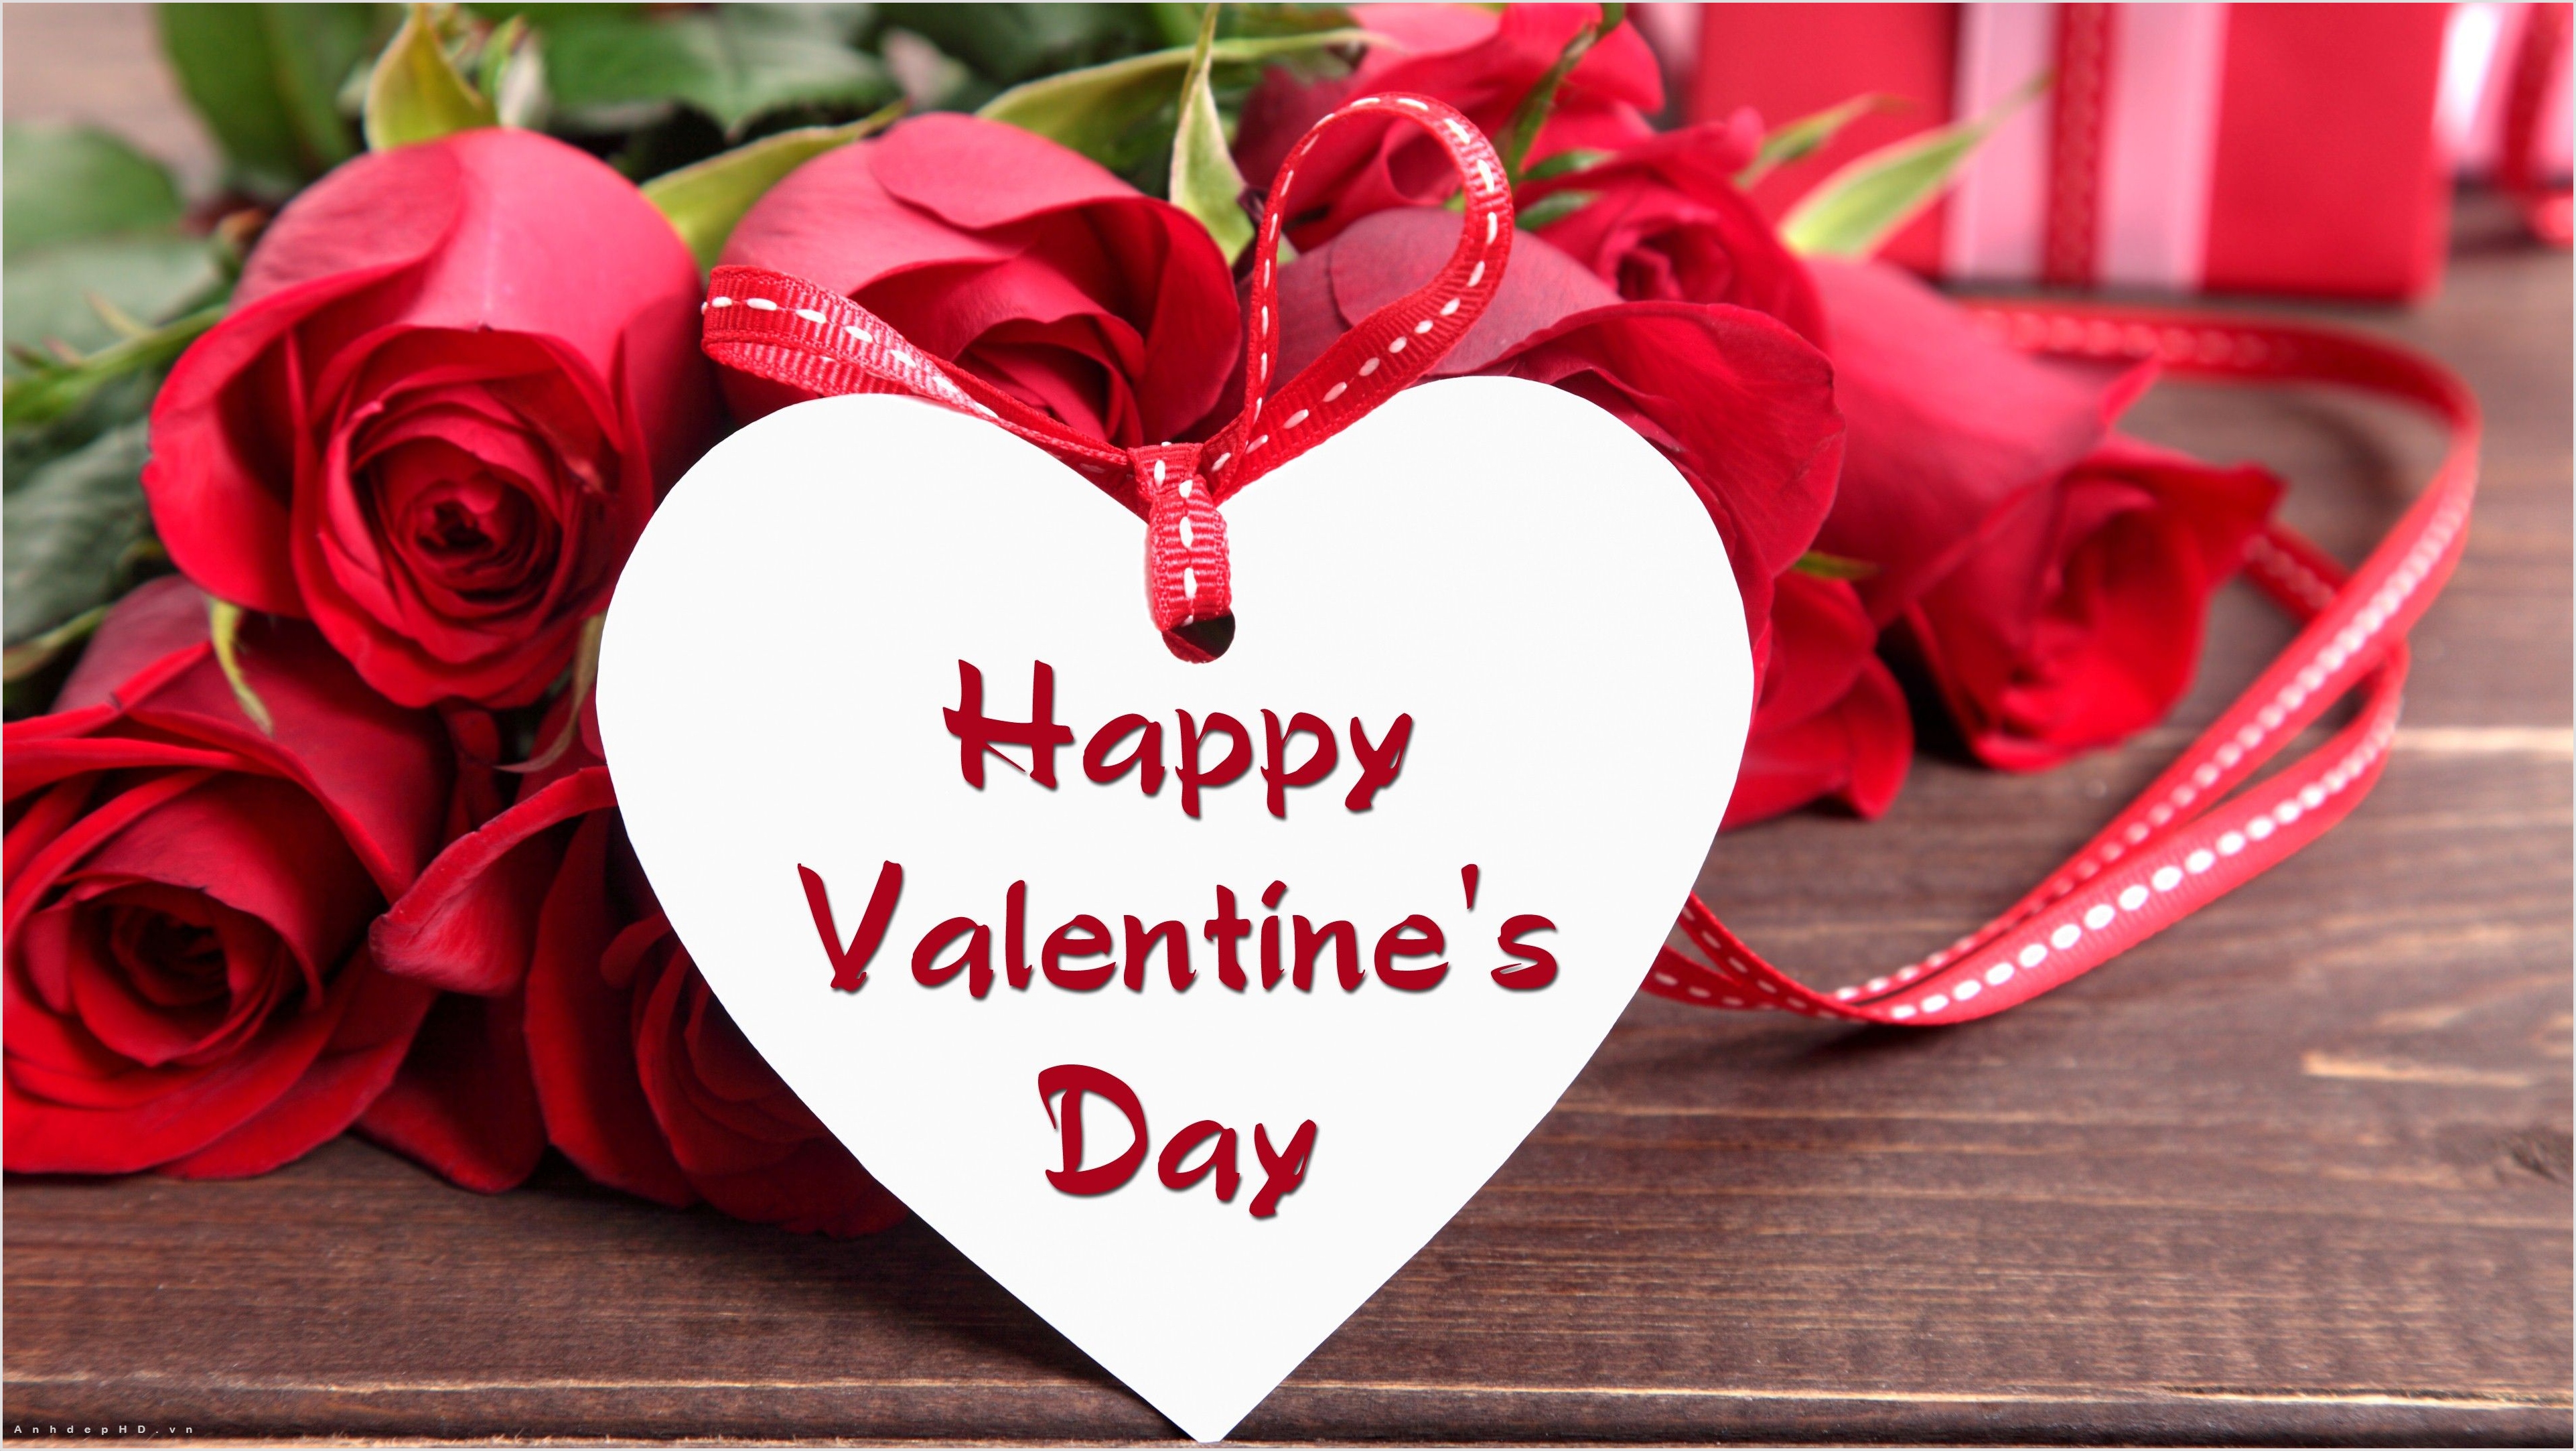 Những bức hình Valentine Day là món quà ý nghĩa dành cho những người bạn yêu thương. Hãy tham gia để trao đi niềm vui và cảm hứng trong mùa lễ tình nhân này!